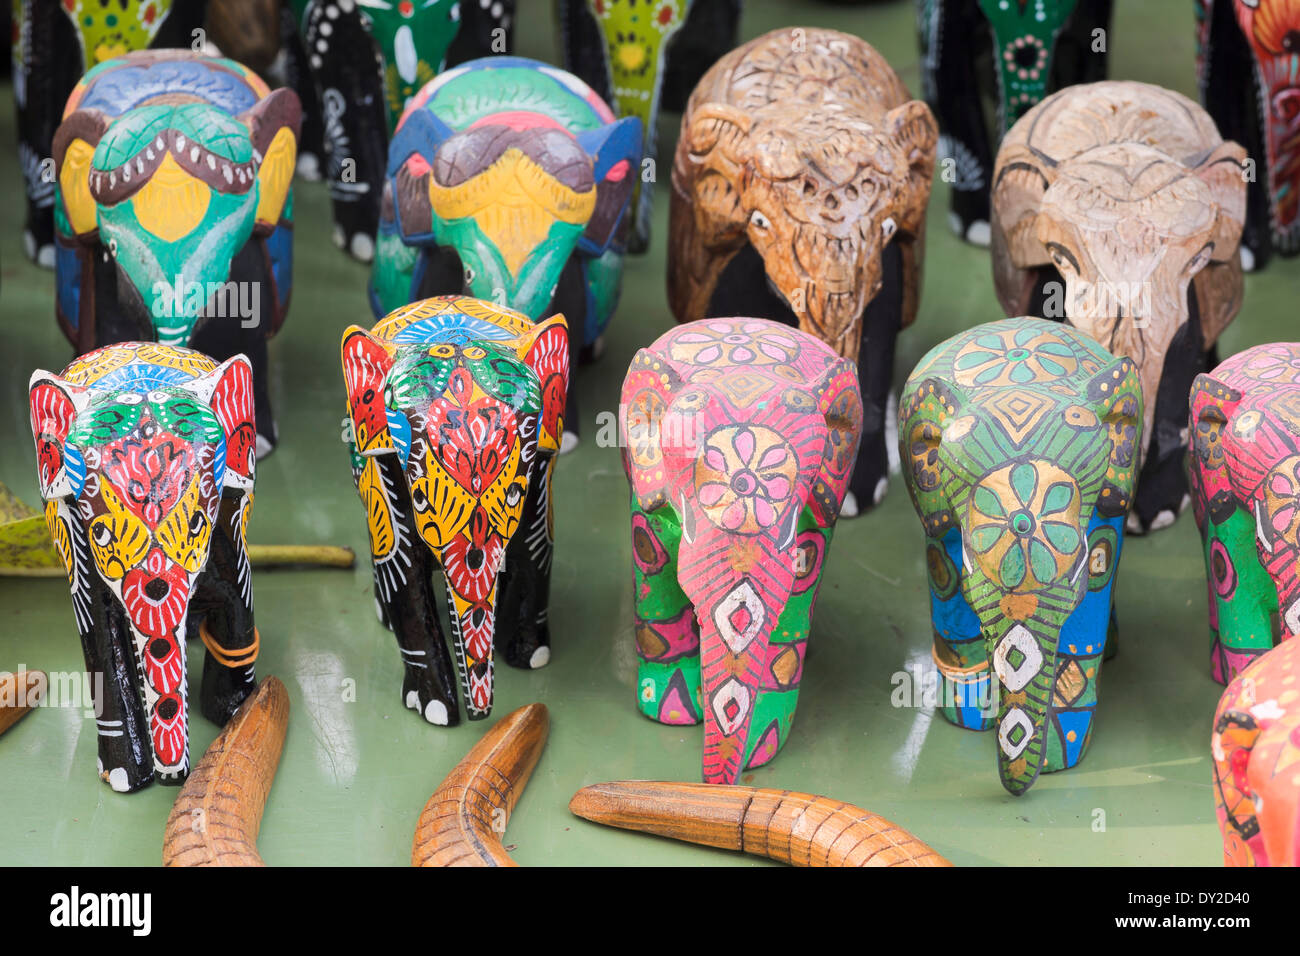 Kandy, Sri Lanka. Bois sculpté peint les éléphants à vendre at a market stall Banque D'Images